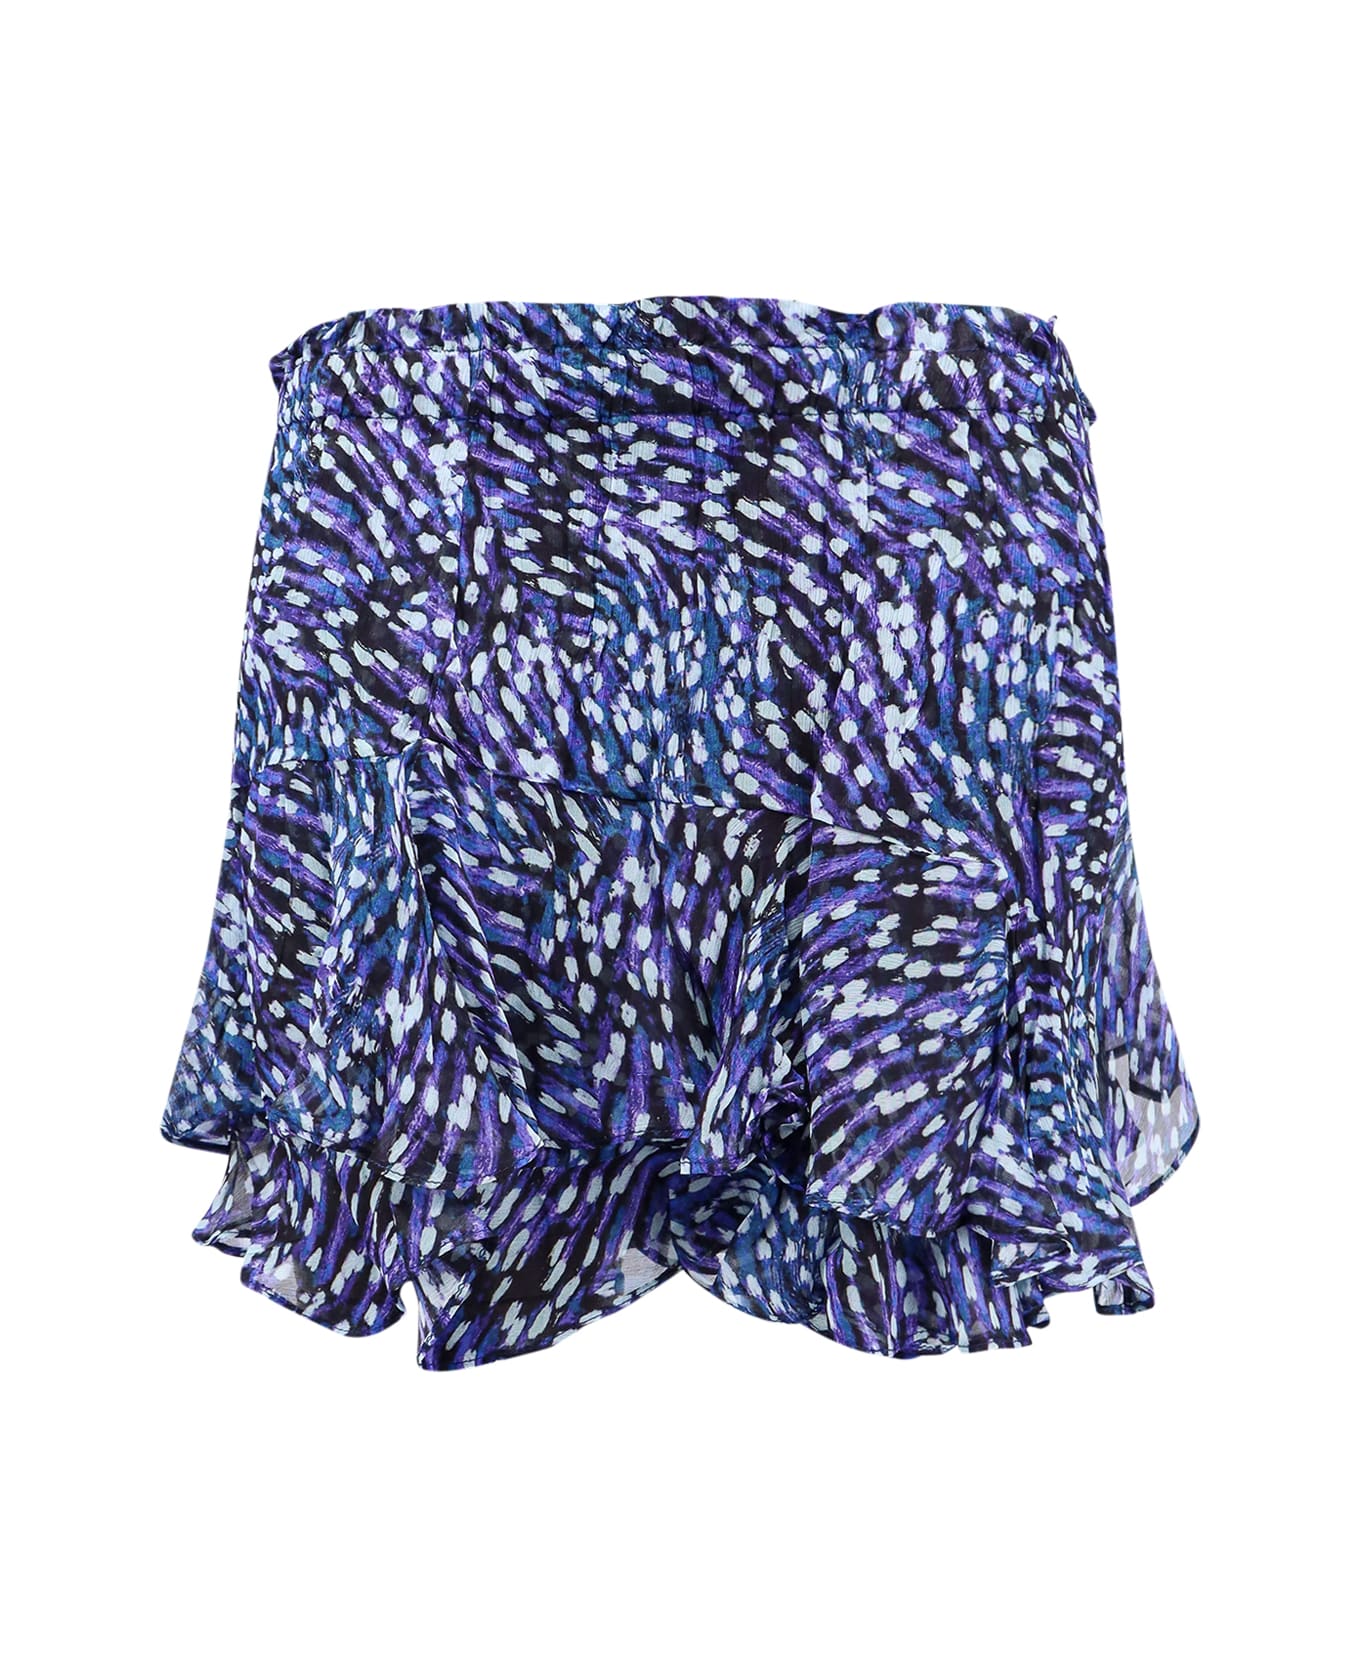 Marant Étoile Sornel Shorts - Blue